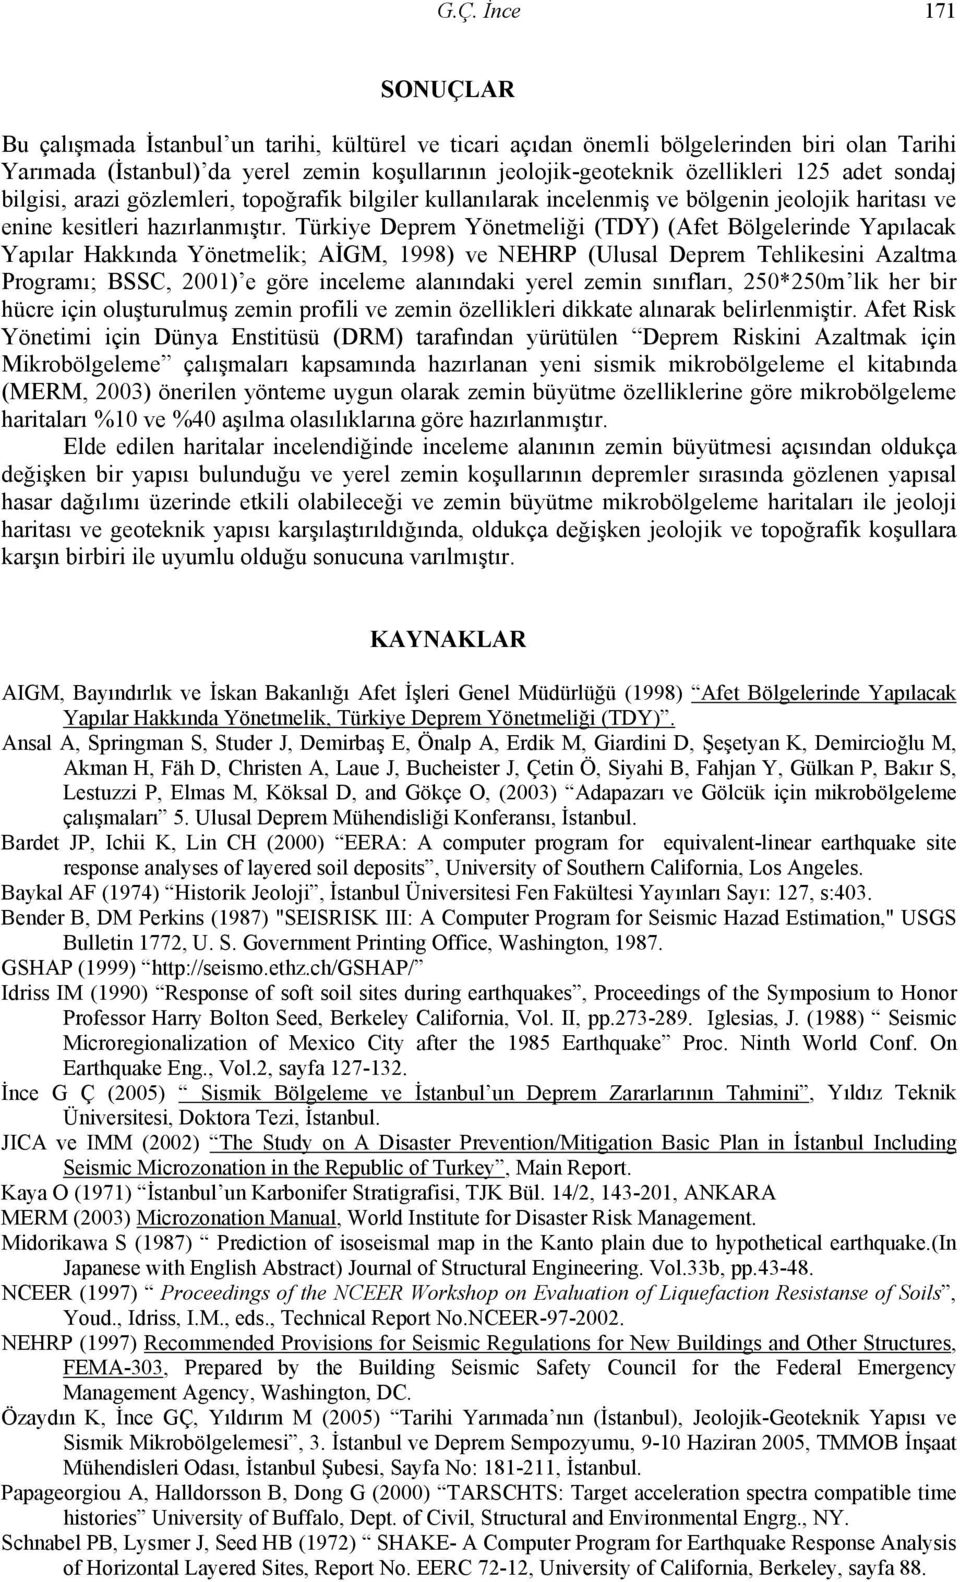 Türkiye Deprem Yönetmeliği (TDY) (Afet Bölgelerinde Yapılacak Yapılar Hakkında Yönetmelik; AİGM, 1998) ve NEHRP (Ulusal Deprem Tehlikesini Azaltma Programı; BSSC, 2001) e göre inceleme alanındaki